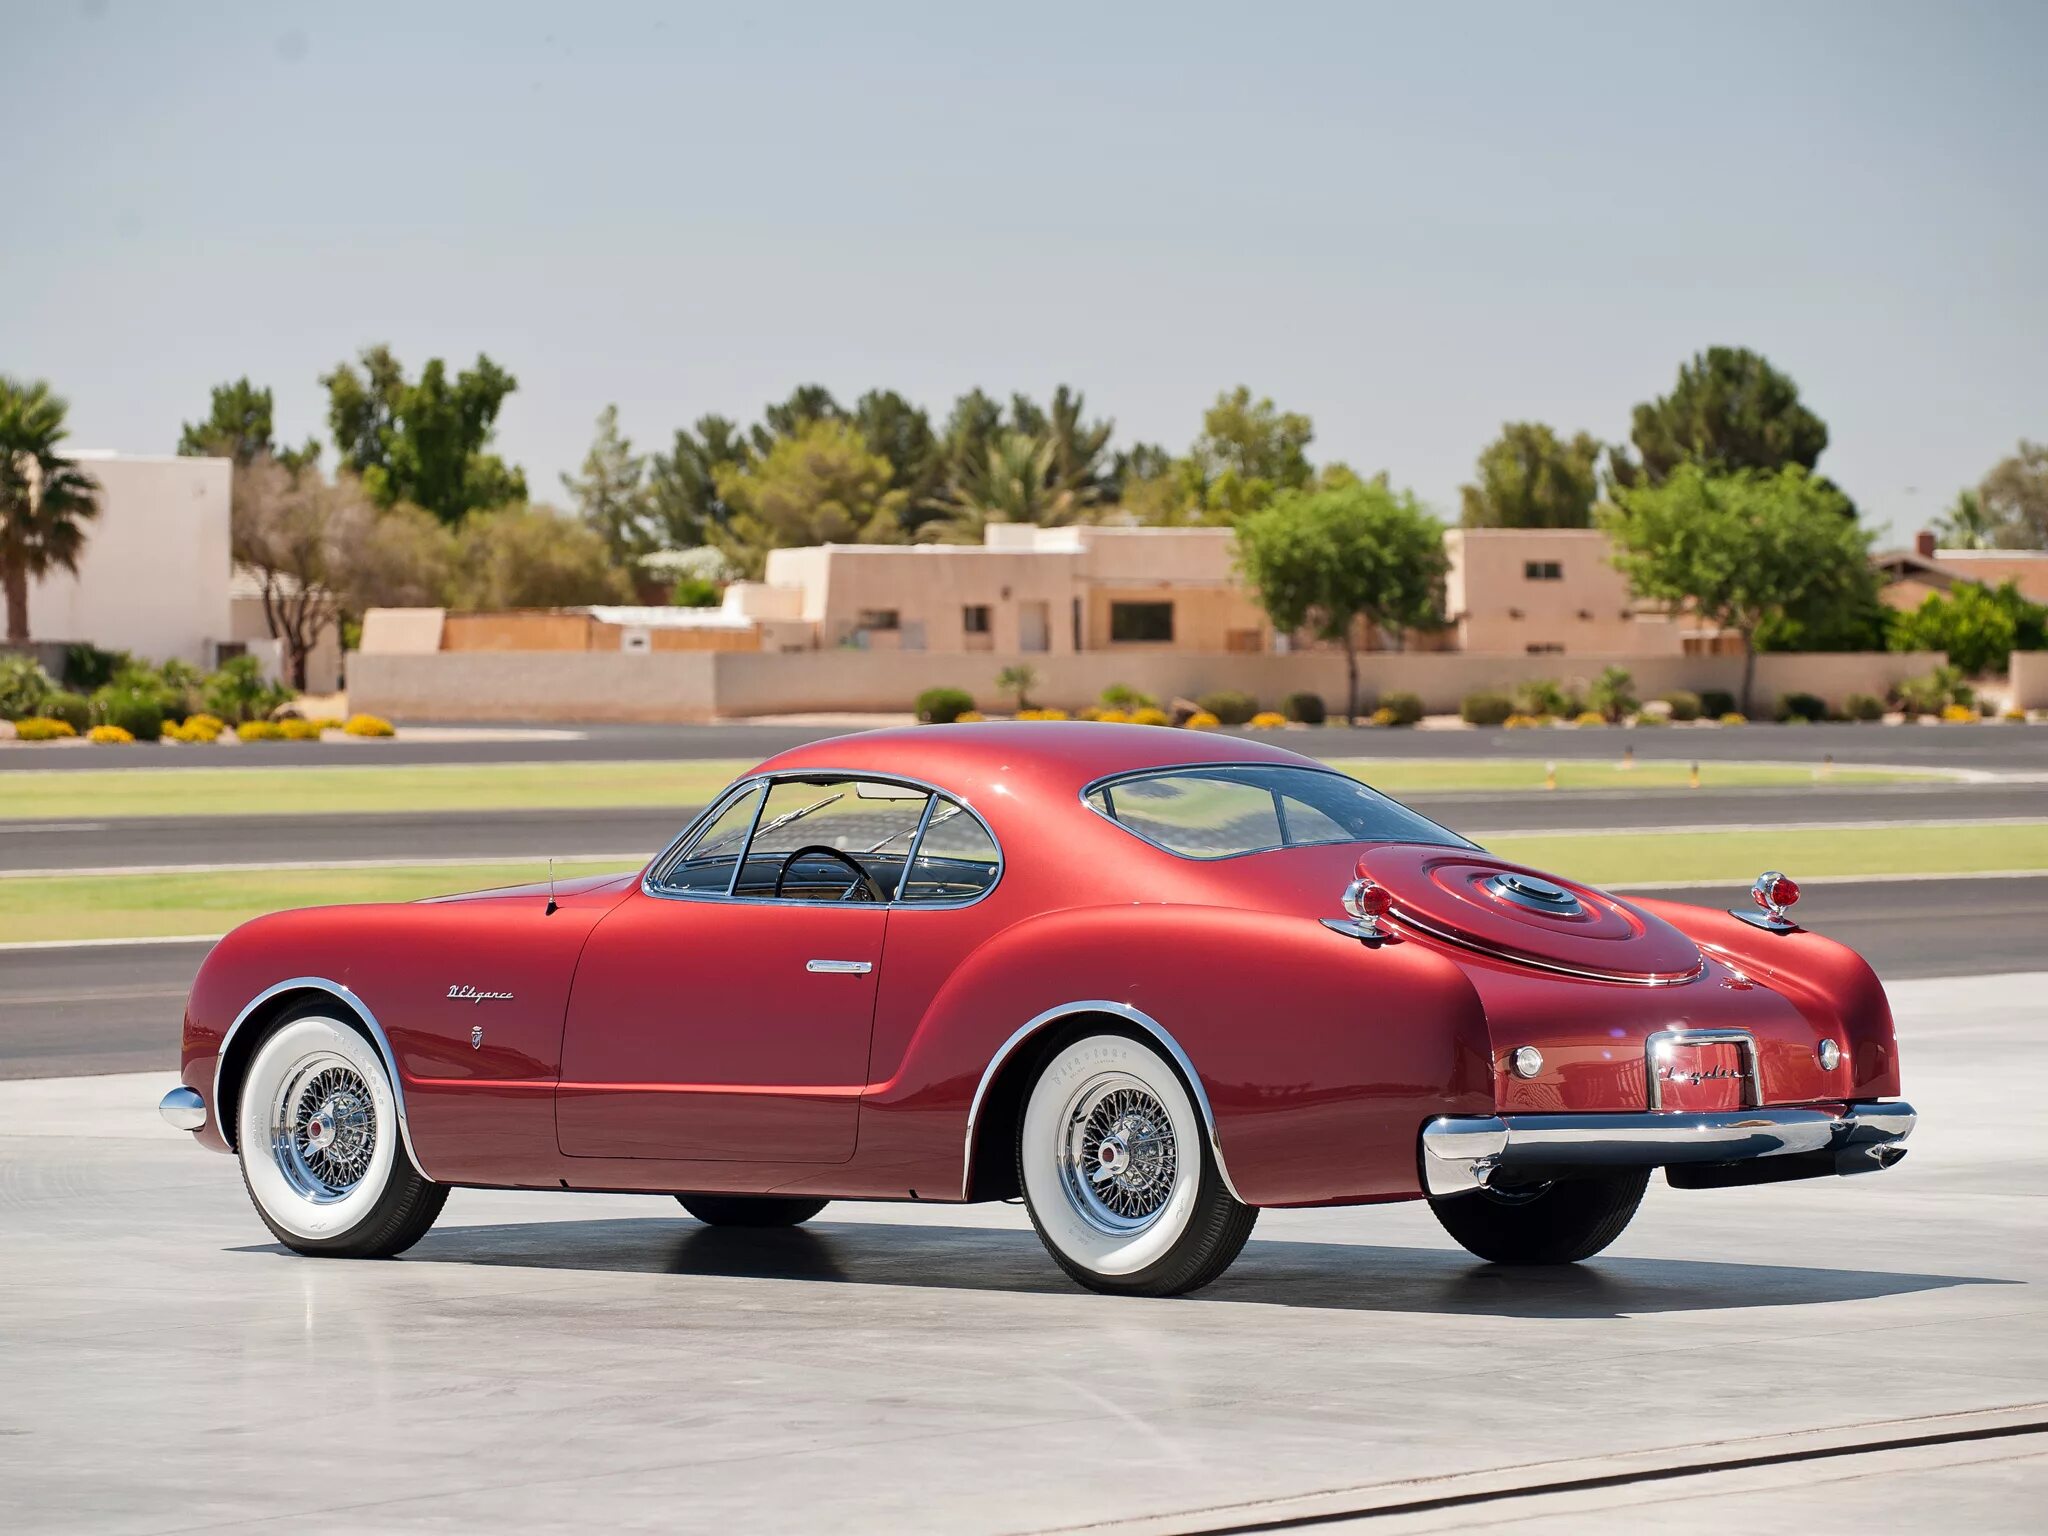 Американские прототипы. Chrysler d'Elegance 1952. Chrysler d Elegance 1953. VW Karmann-Ghia 1953. 1952 Chrysler d’Elegance by Ghia.